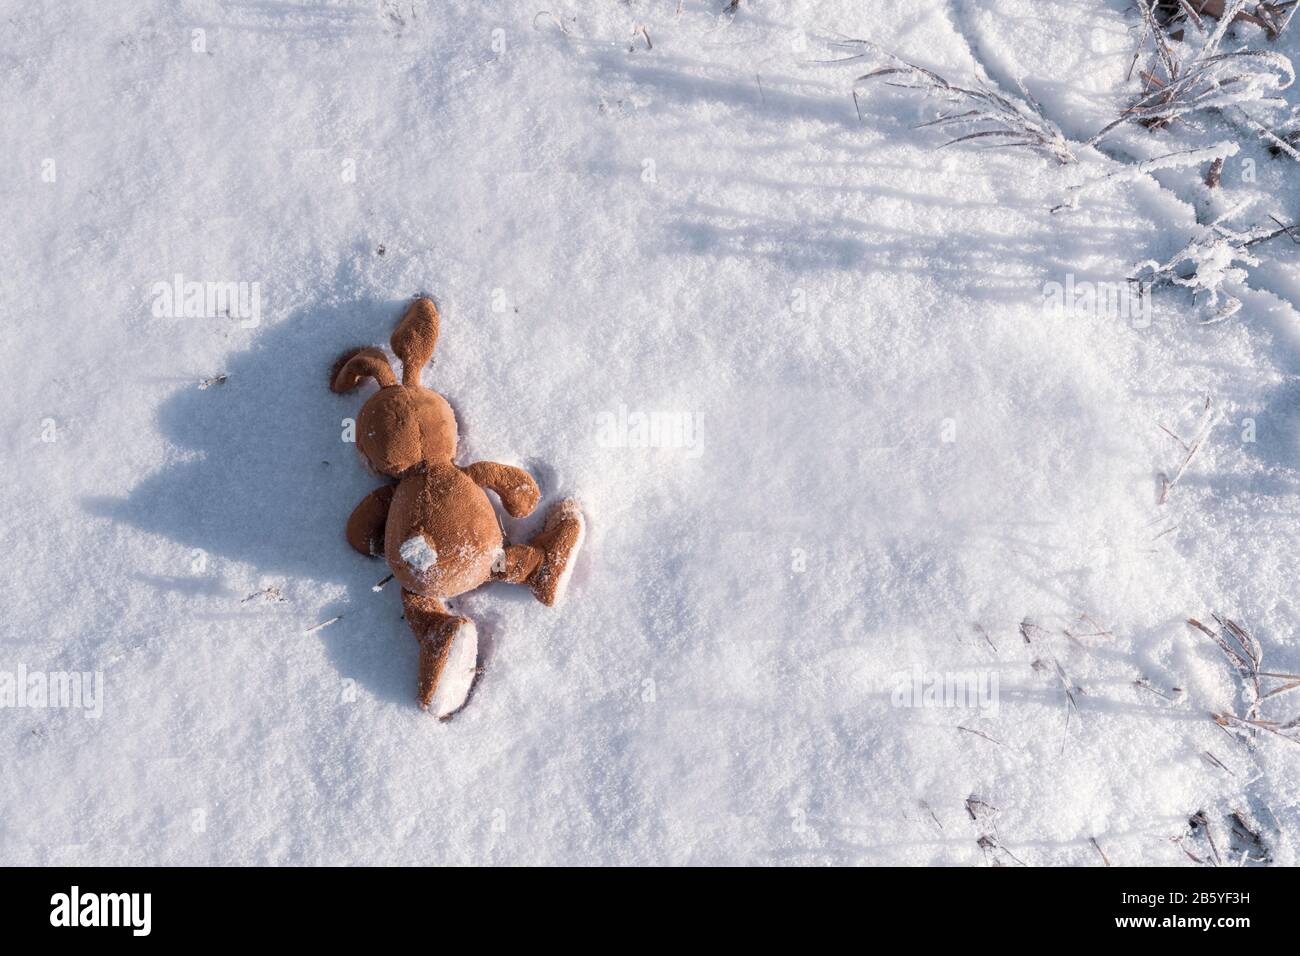 Ein verlassenes oder verlorenes Efeu-Bunny-Spielzeug liegt auf dem Schnee. Copyspace. Kinder verlieren und werfen Spielzeug. Allegorie, Trennung, Einsamkeit und Tod. Emotionen. C Stockfoto